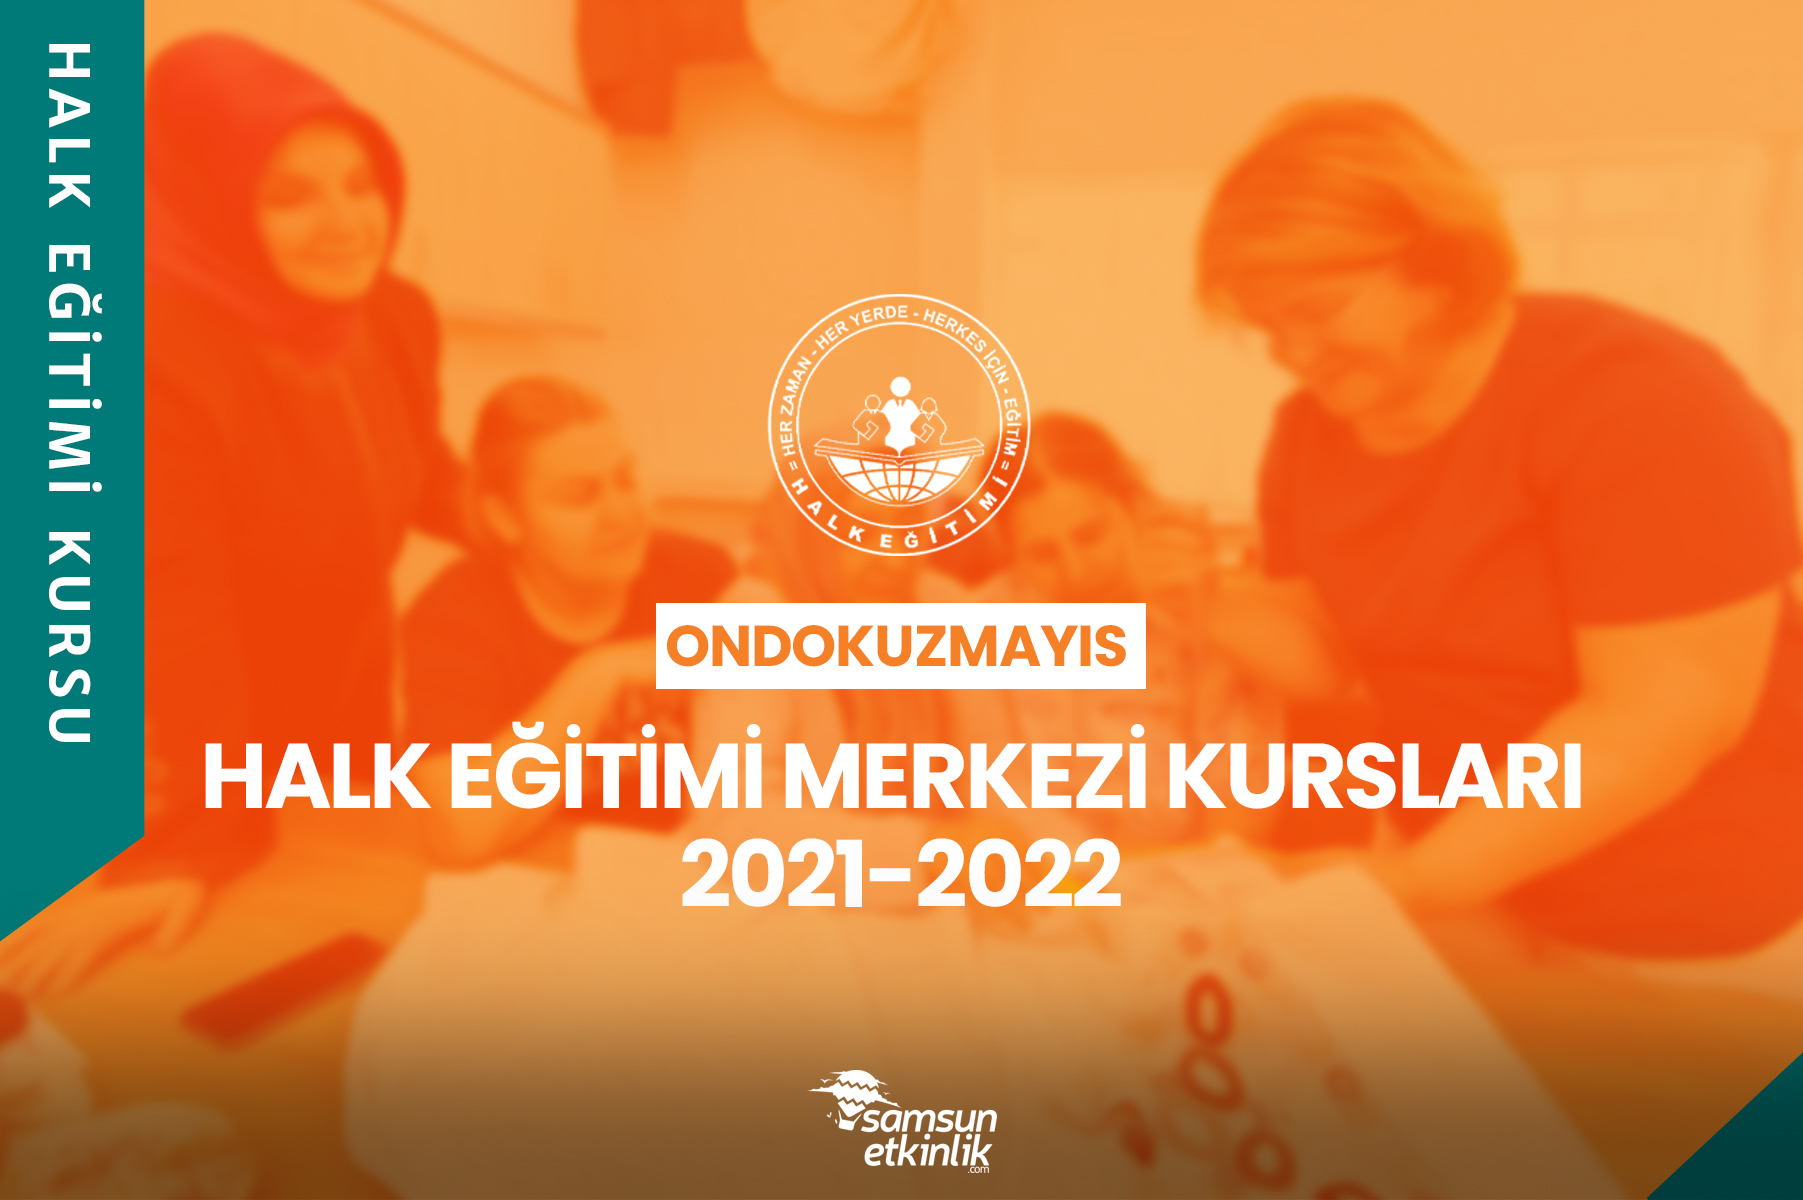 Samsun Ondokuzmayıs Halk Eğitimi Merkezi Kursları 2021-2022